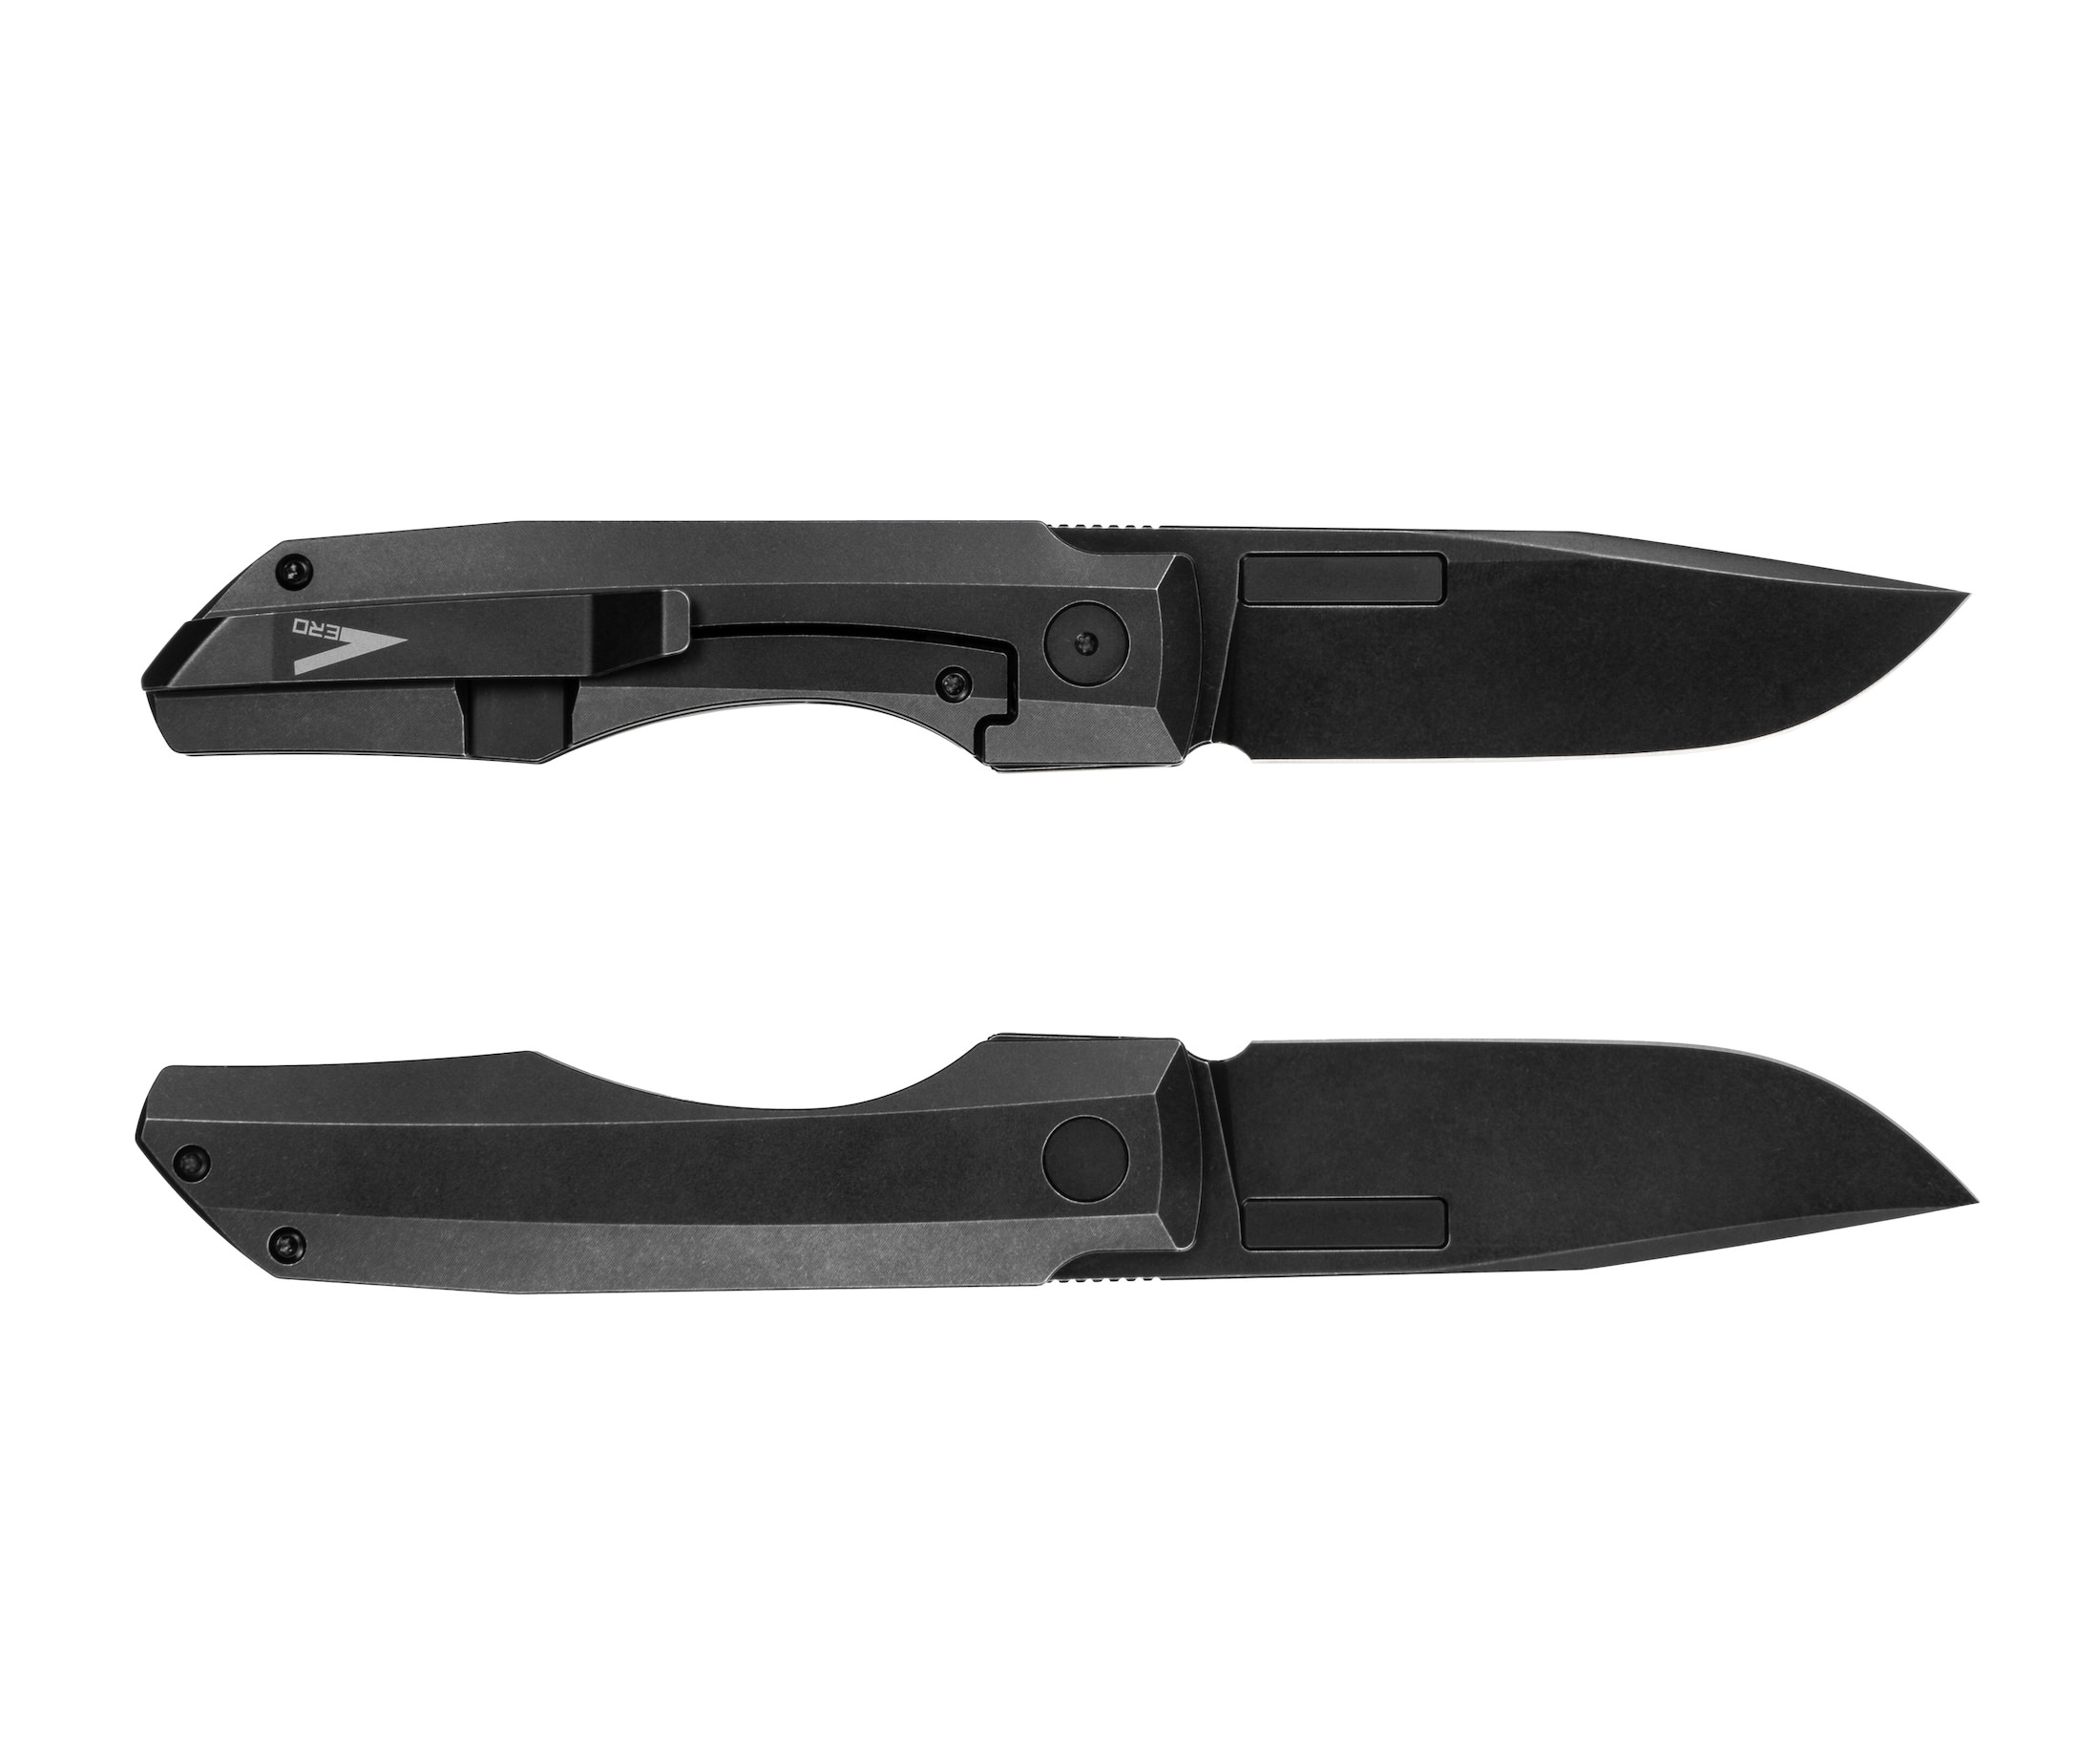 The New Vero Impulse Thin EDC Pocket Knife